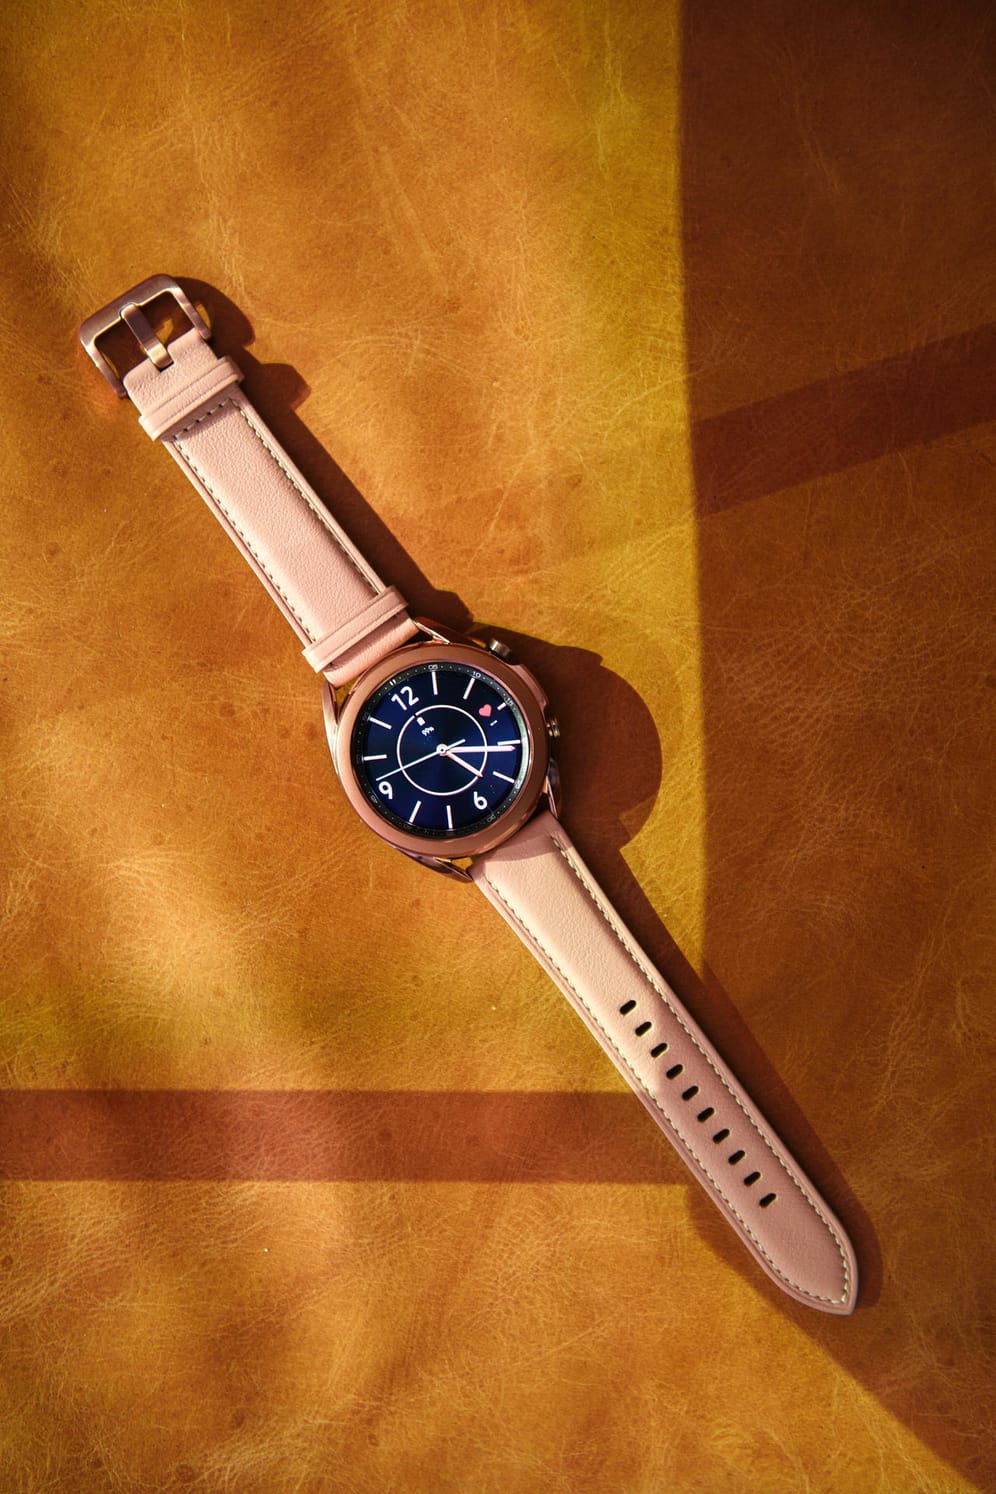 Samsung hat zudem seine Smartwatch überarbeitet. Die Galaxy Watch der 3. Generation soll mehrere Gesundheitsfunktionen bekommen, unter anderem eine EKG- und Blutdruckfunktion.